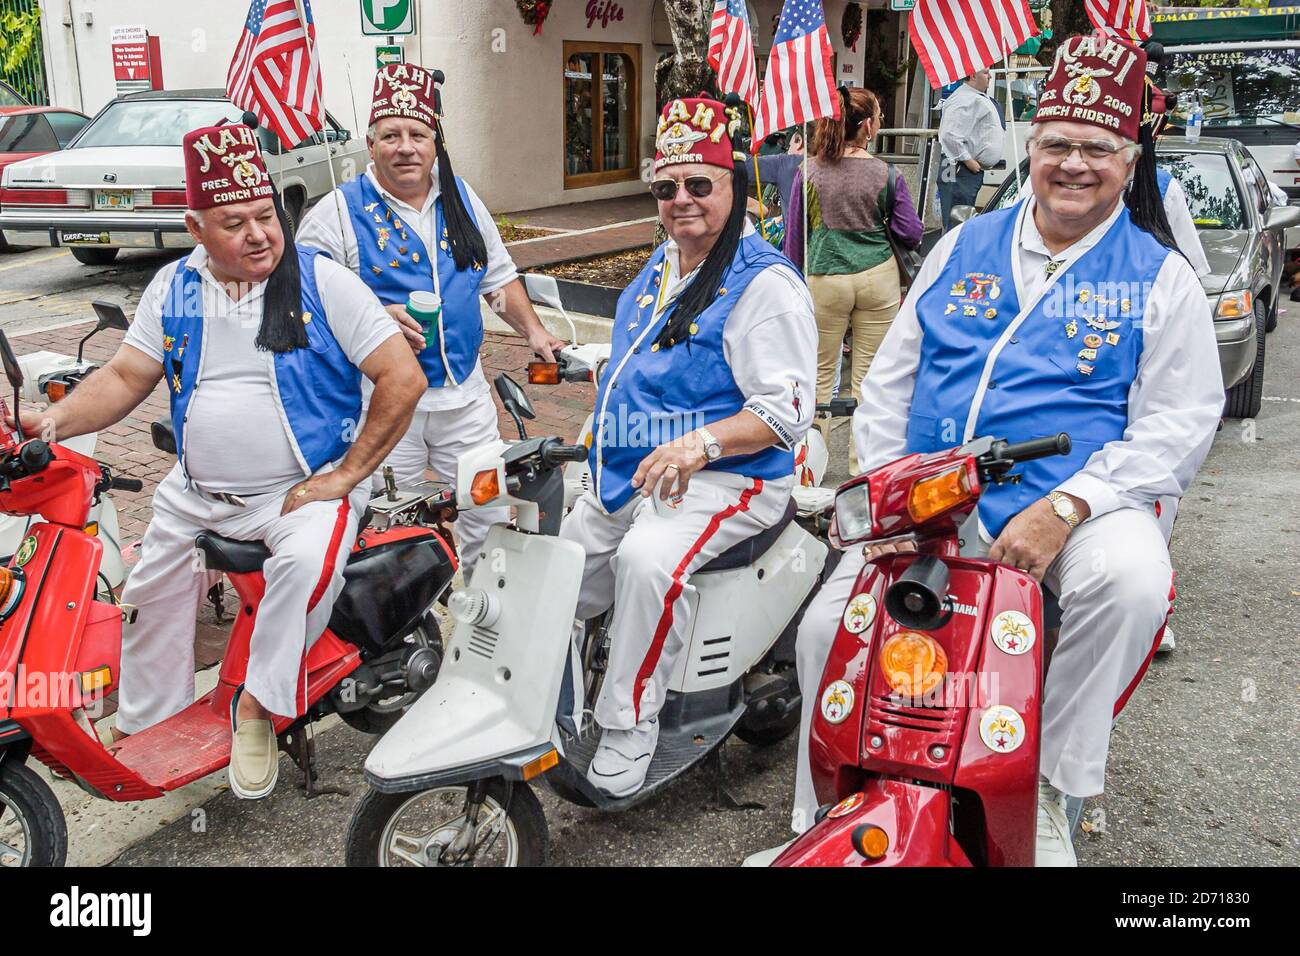 Miami Florida,Coconut Grove King Mango Strut Parade annuale Mahi Shriners Shriner Conch Riders Club organizzazione fraterna, uomo uomini anziani scooter scoo Foto Stock